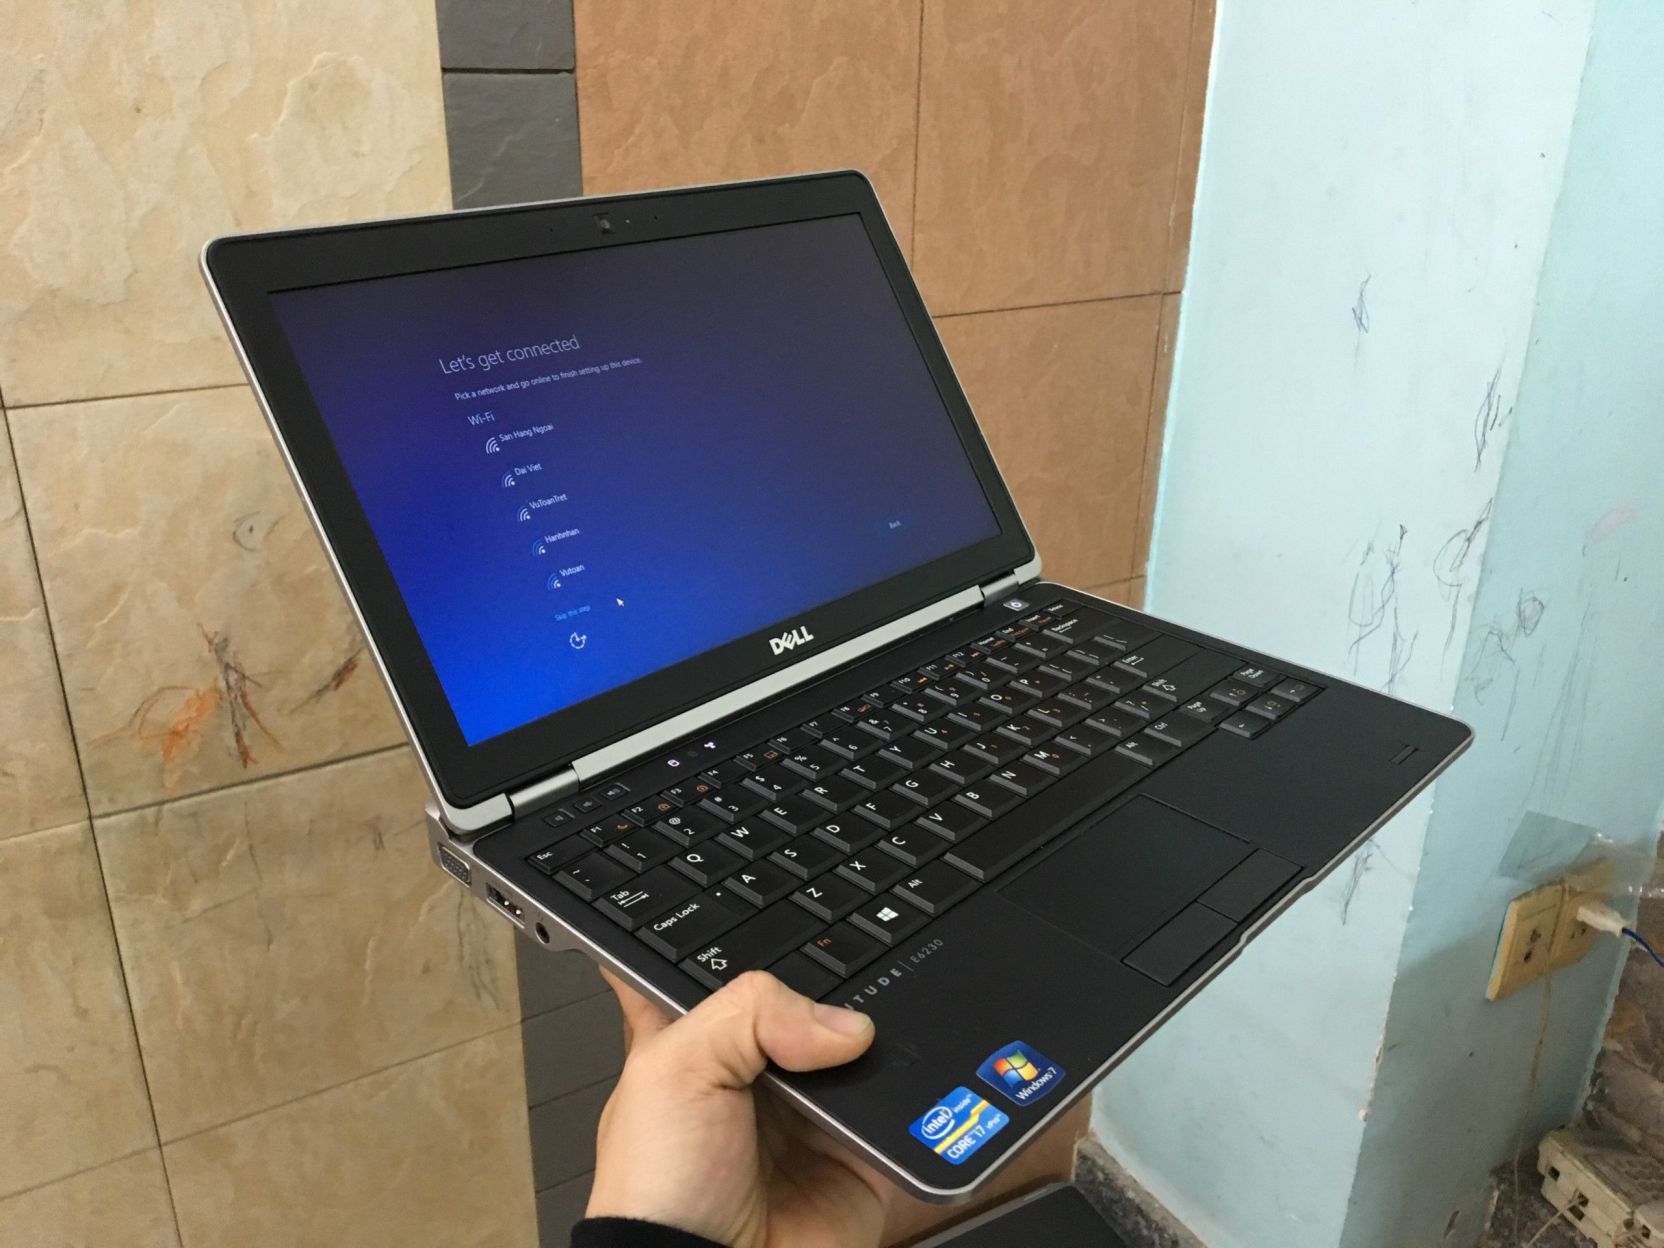 Laptop dell latitude E6230, i7 3520m, ram 4gb, hdd 320gb, màn hình 12.5 inch